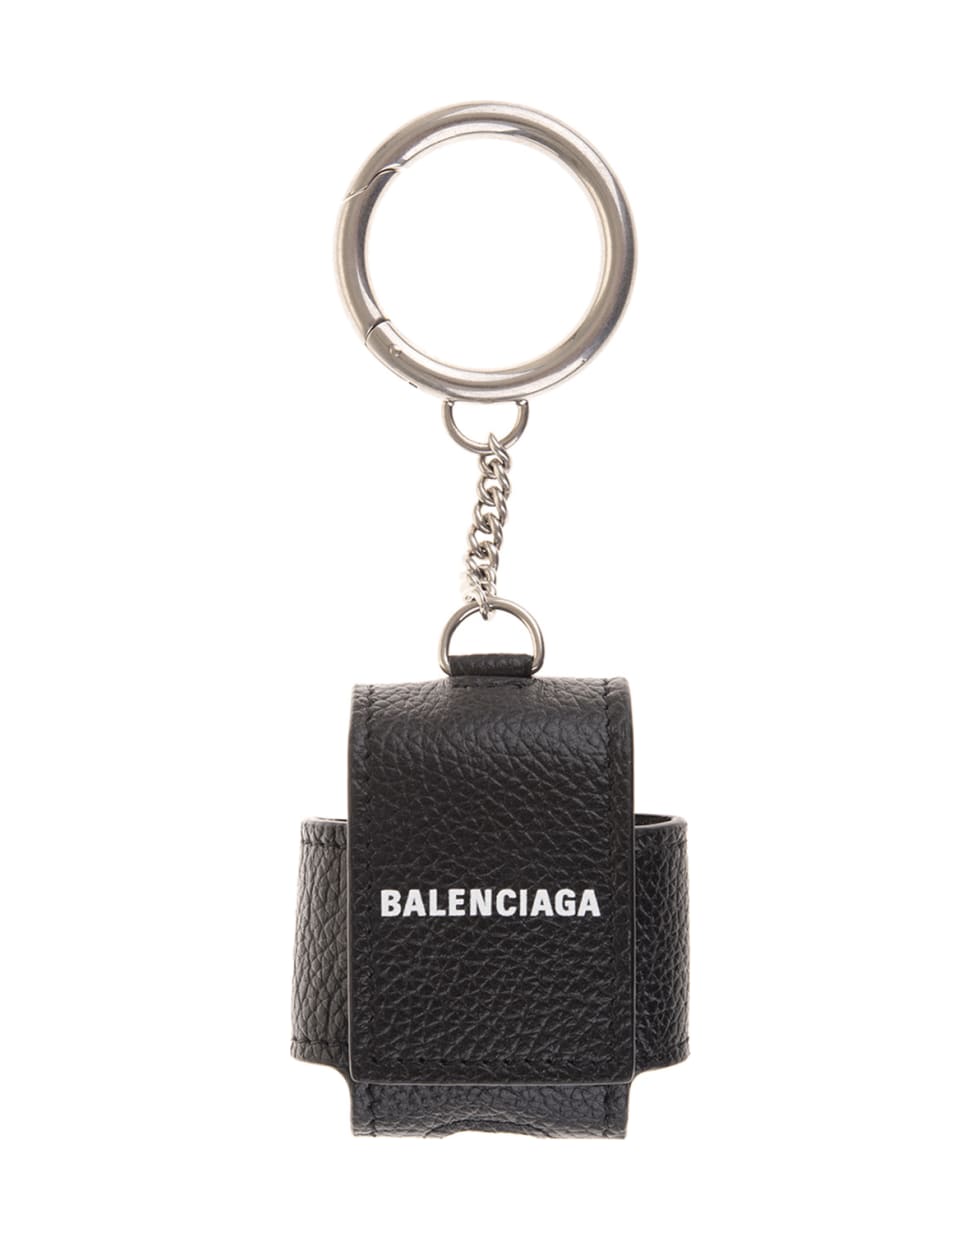 Balenciaga Cash Earpods Case In Black Grained Leather - Black/white